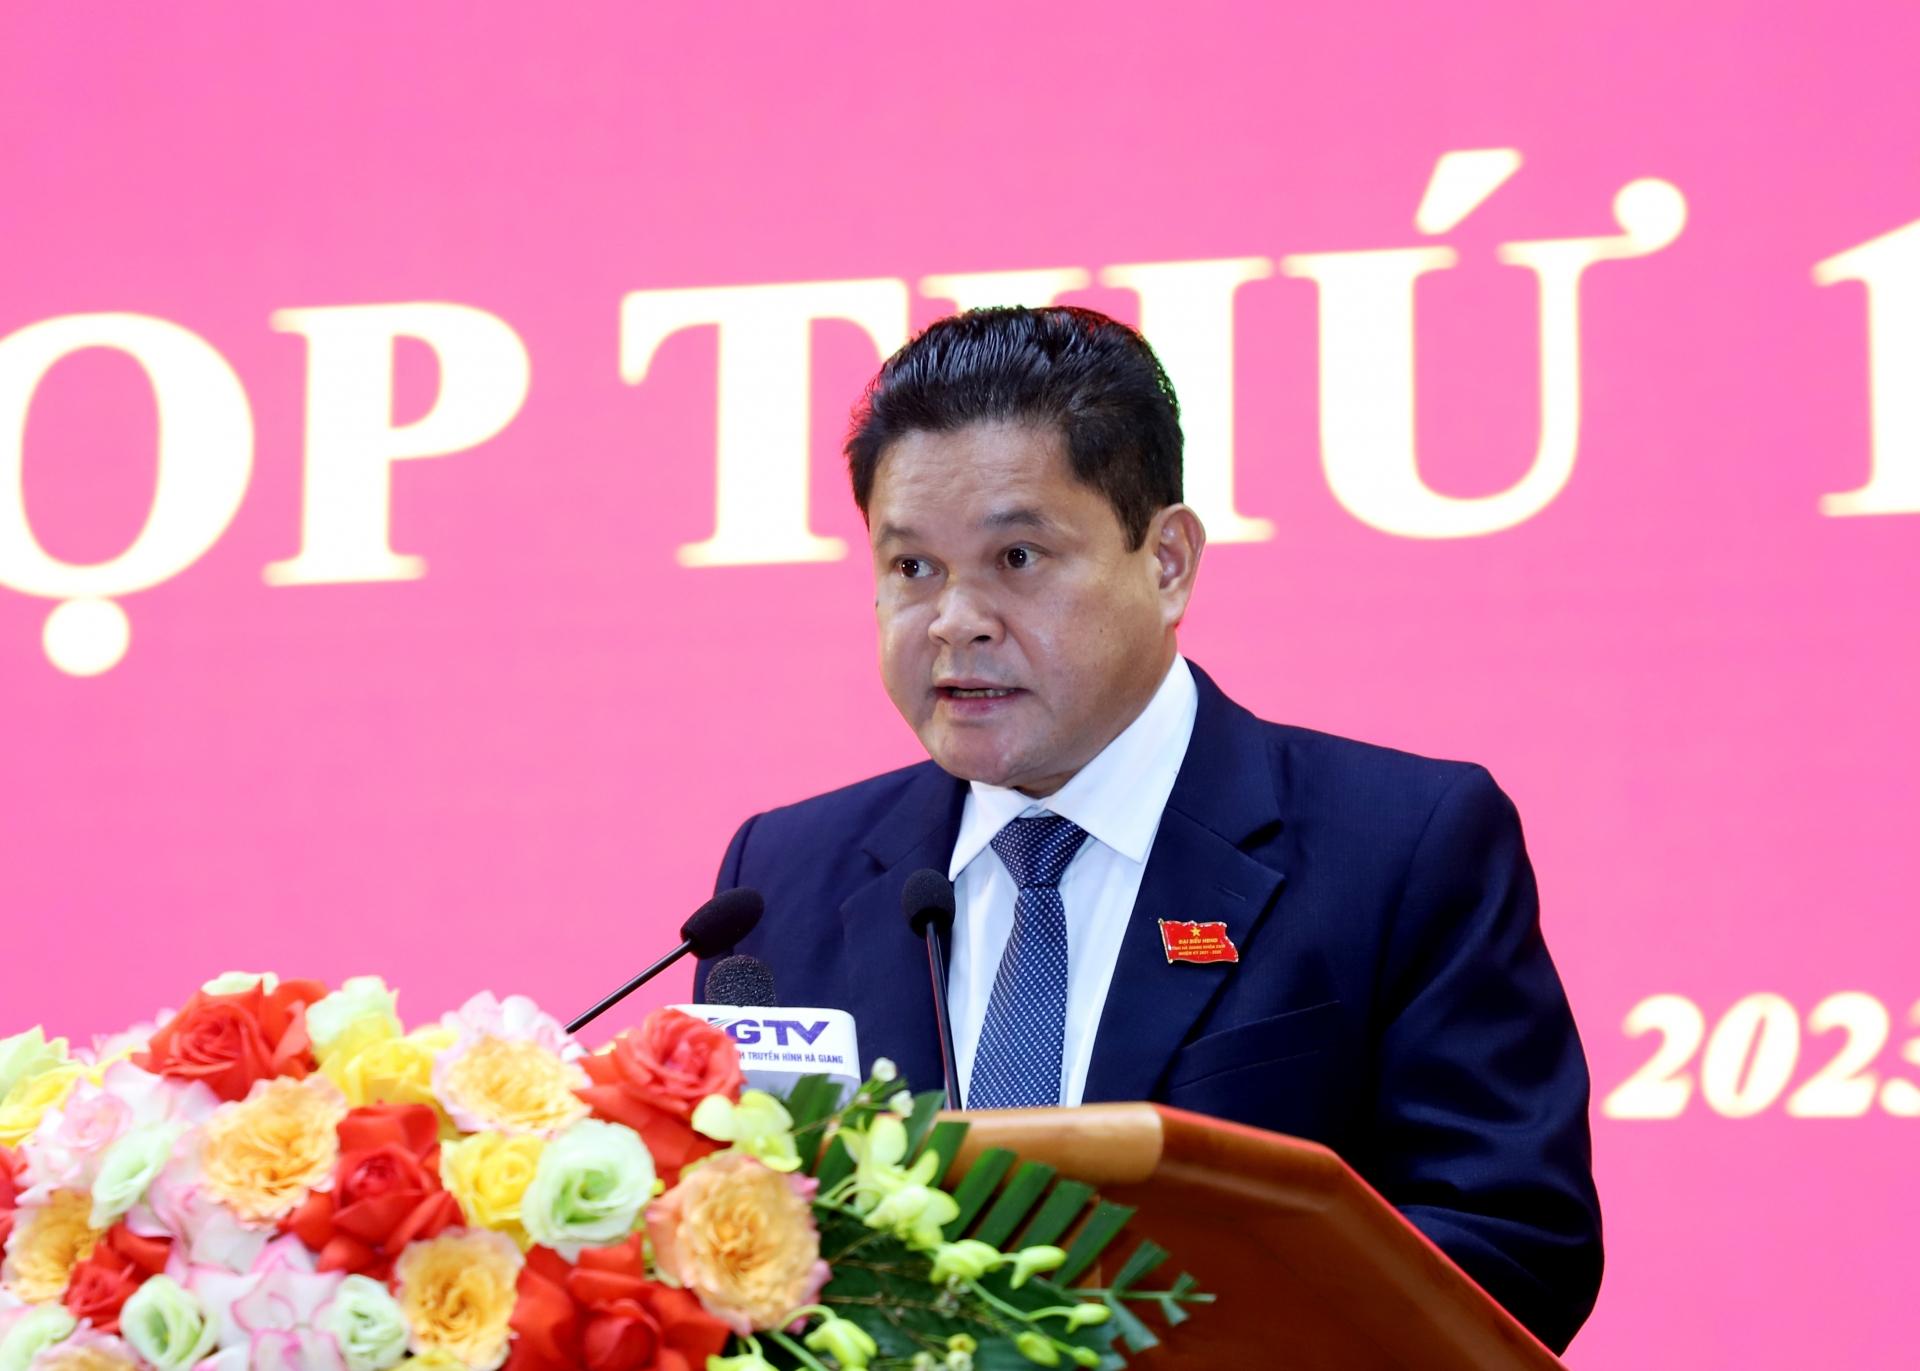 Chủ tịch Ủy ban MTTQ tỉnh Vàng Seo Cón thông báo về công tác tham gia xây dựng chính quyền năm 2023 và tổng hợp ý kiến, kiến nghị của cử tri gửi đến Kỳ họp 14 HĐND tỉnh.